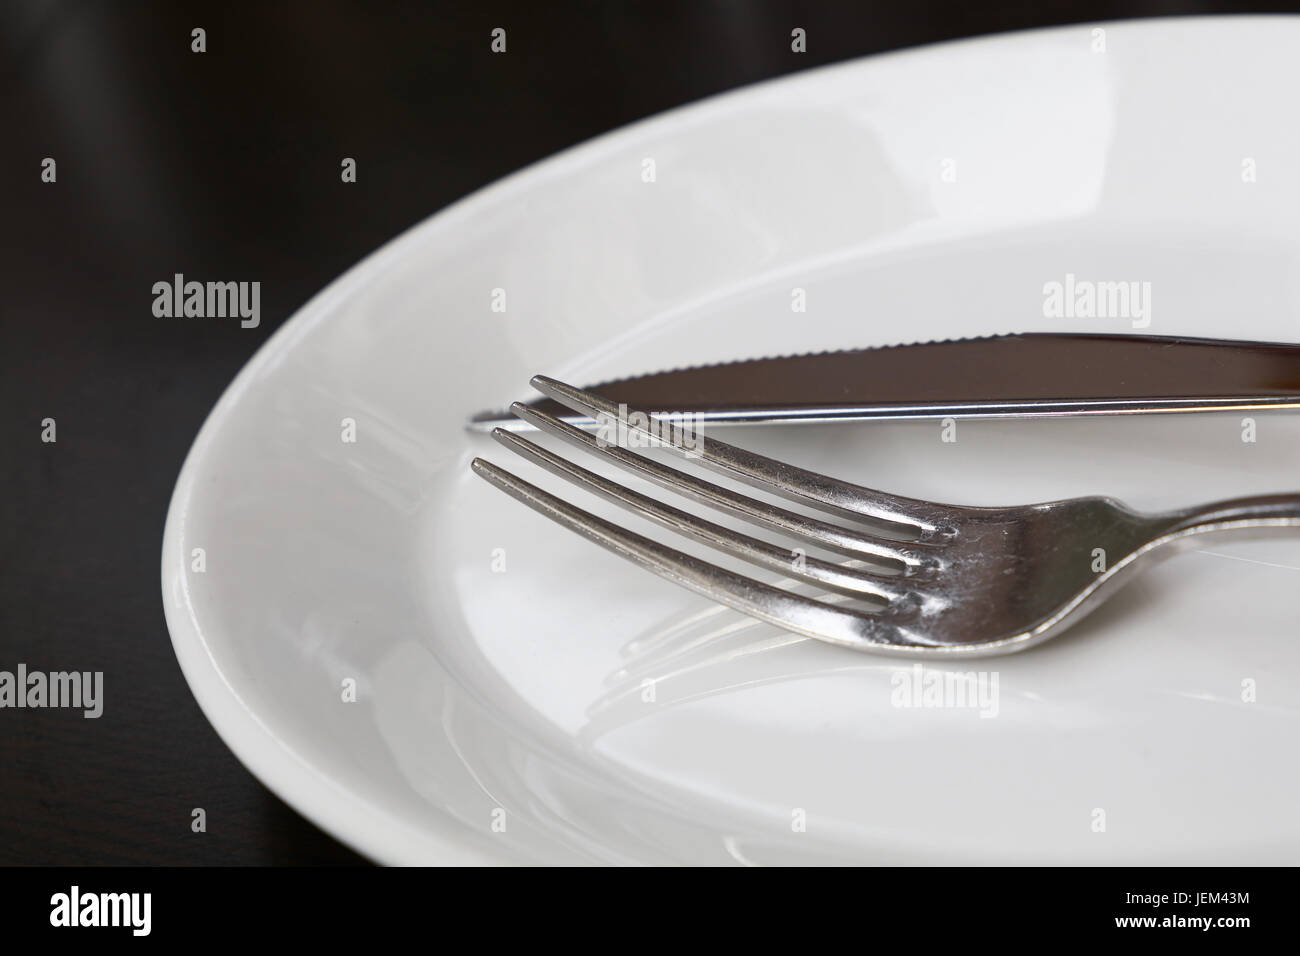 Forcella metallica e coltello da tavola utensili su porcellana bianca della piastra sulla tavola nera, chiudere fino a basso angolo di visione Foto Stock